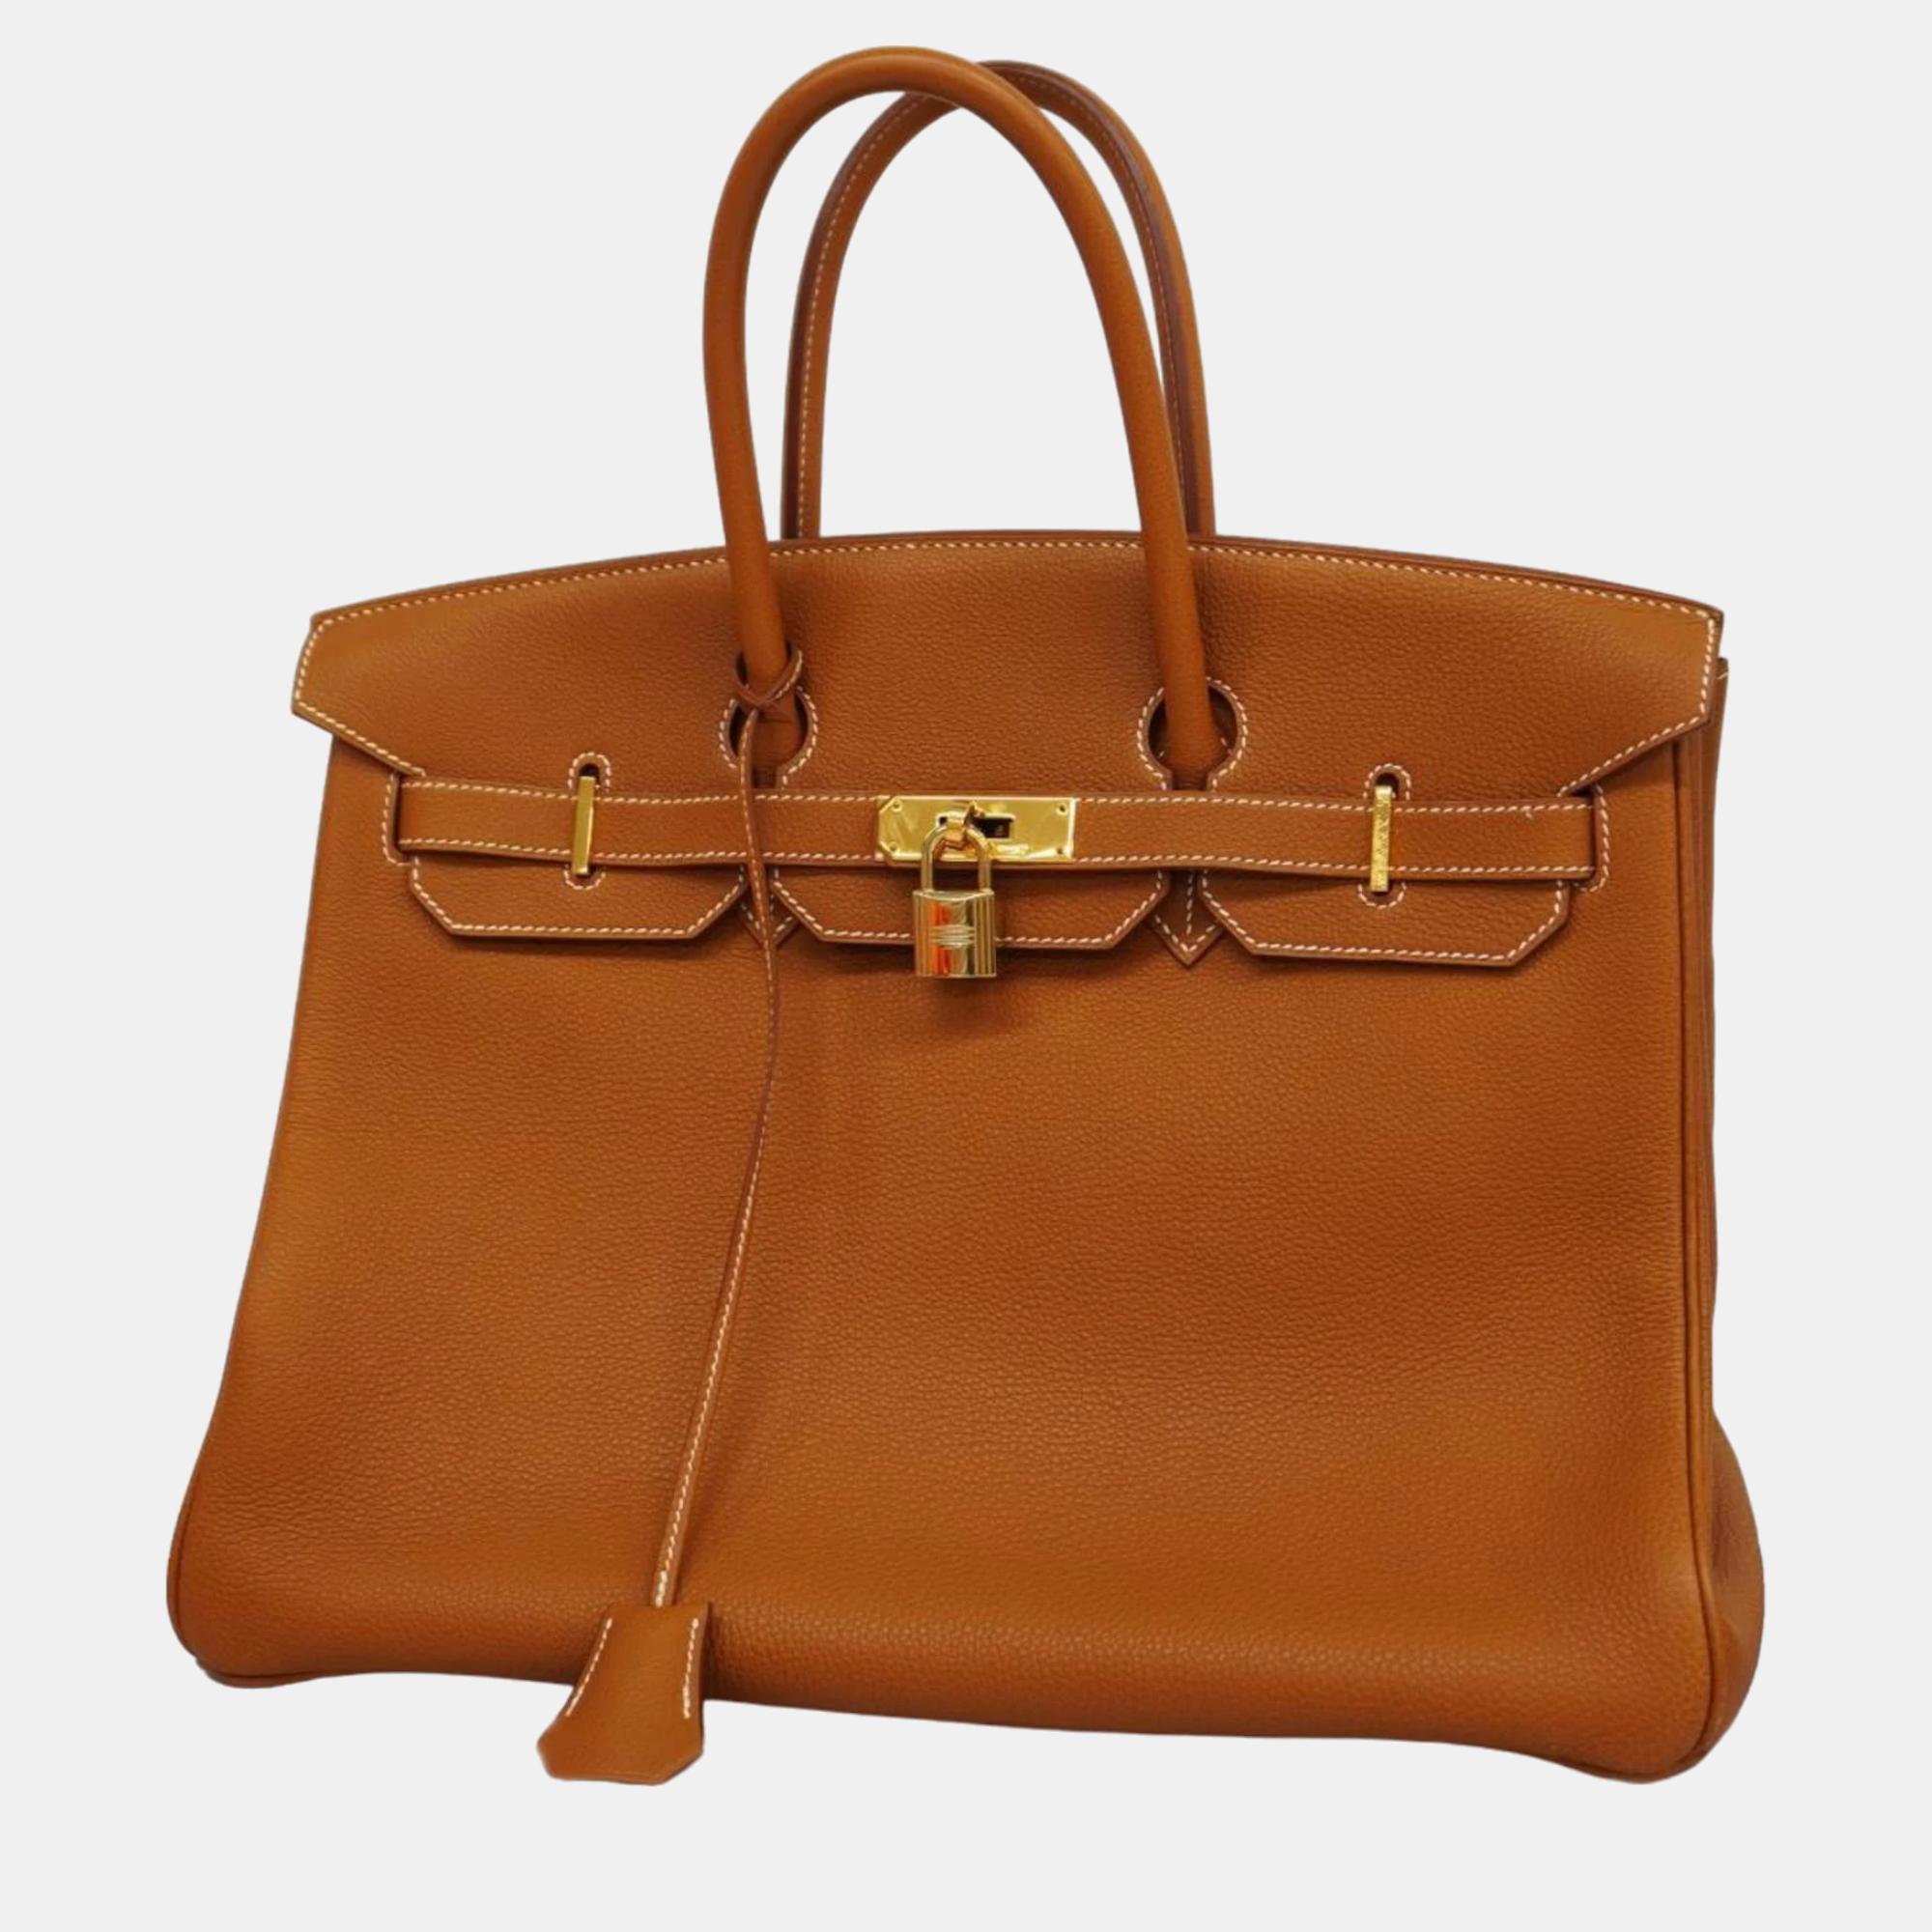 Hermes gold togo leather birkin 35 tote bag